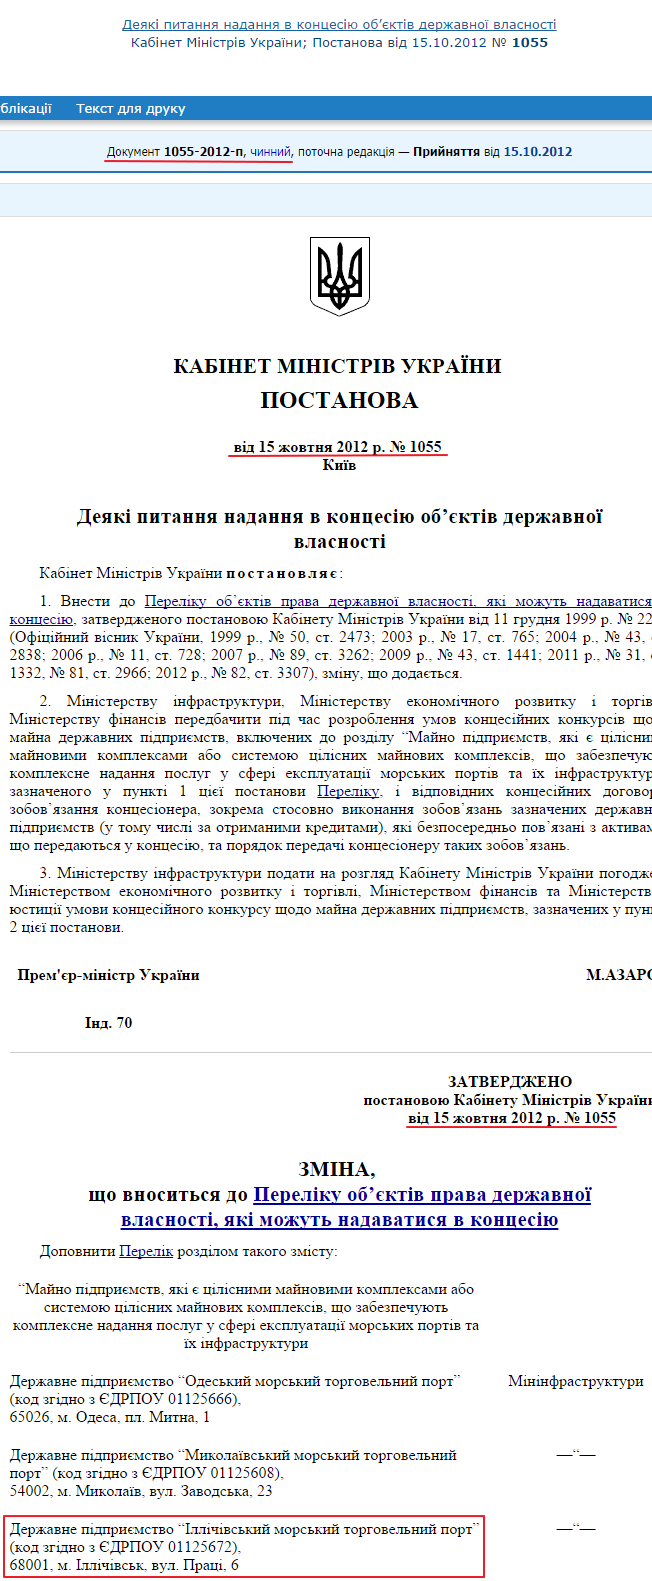 http://zakon2.rada.gov.ua/laws/show/1055-2012-%D0%BF